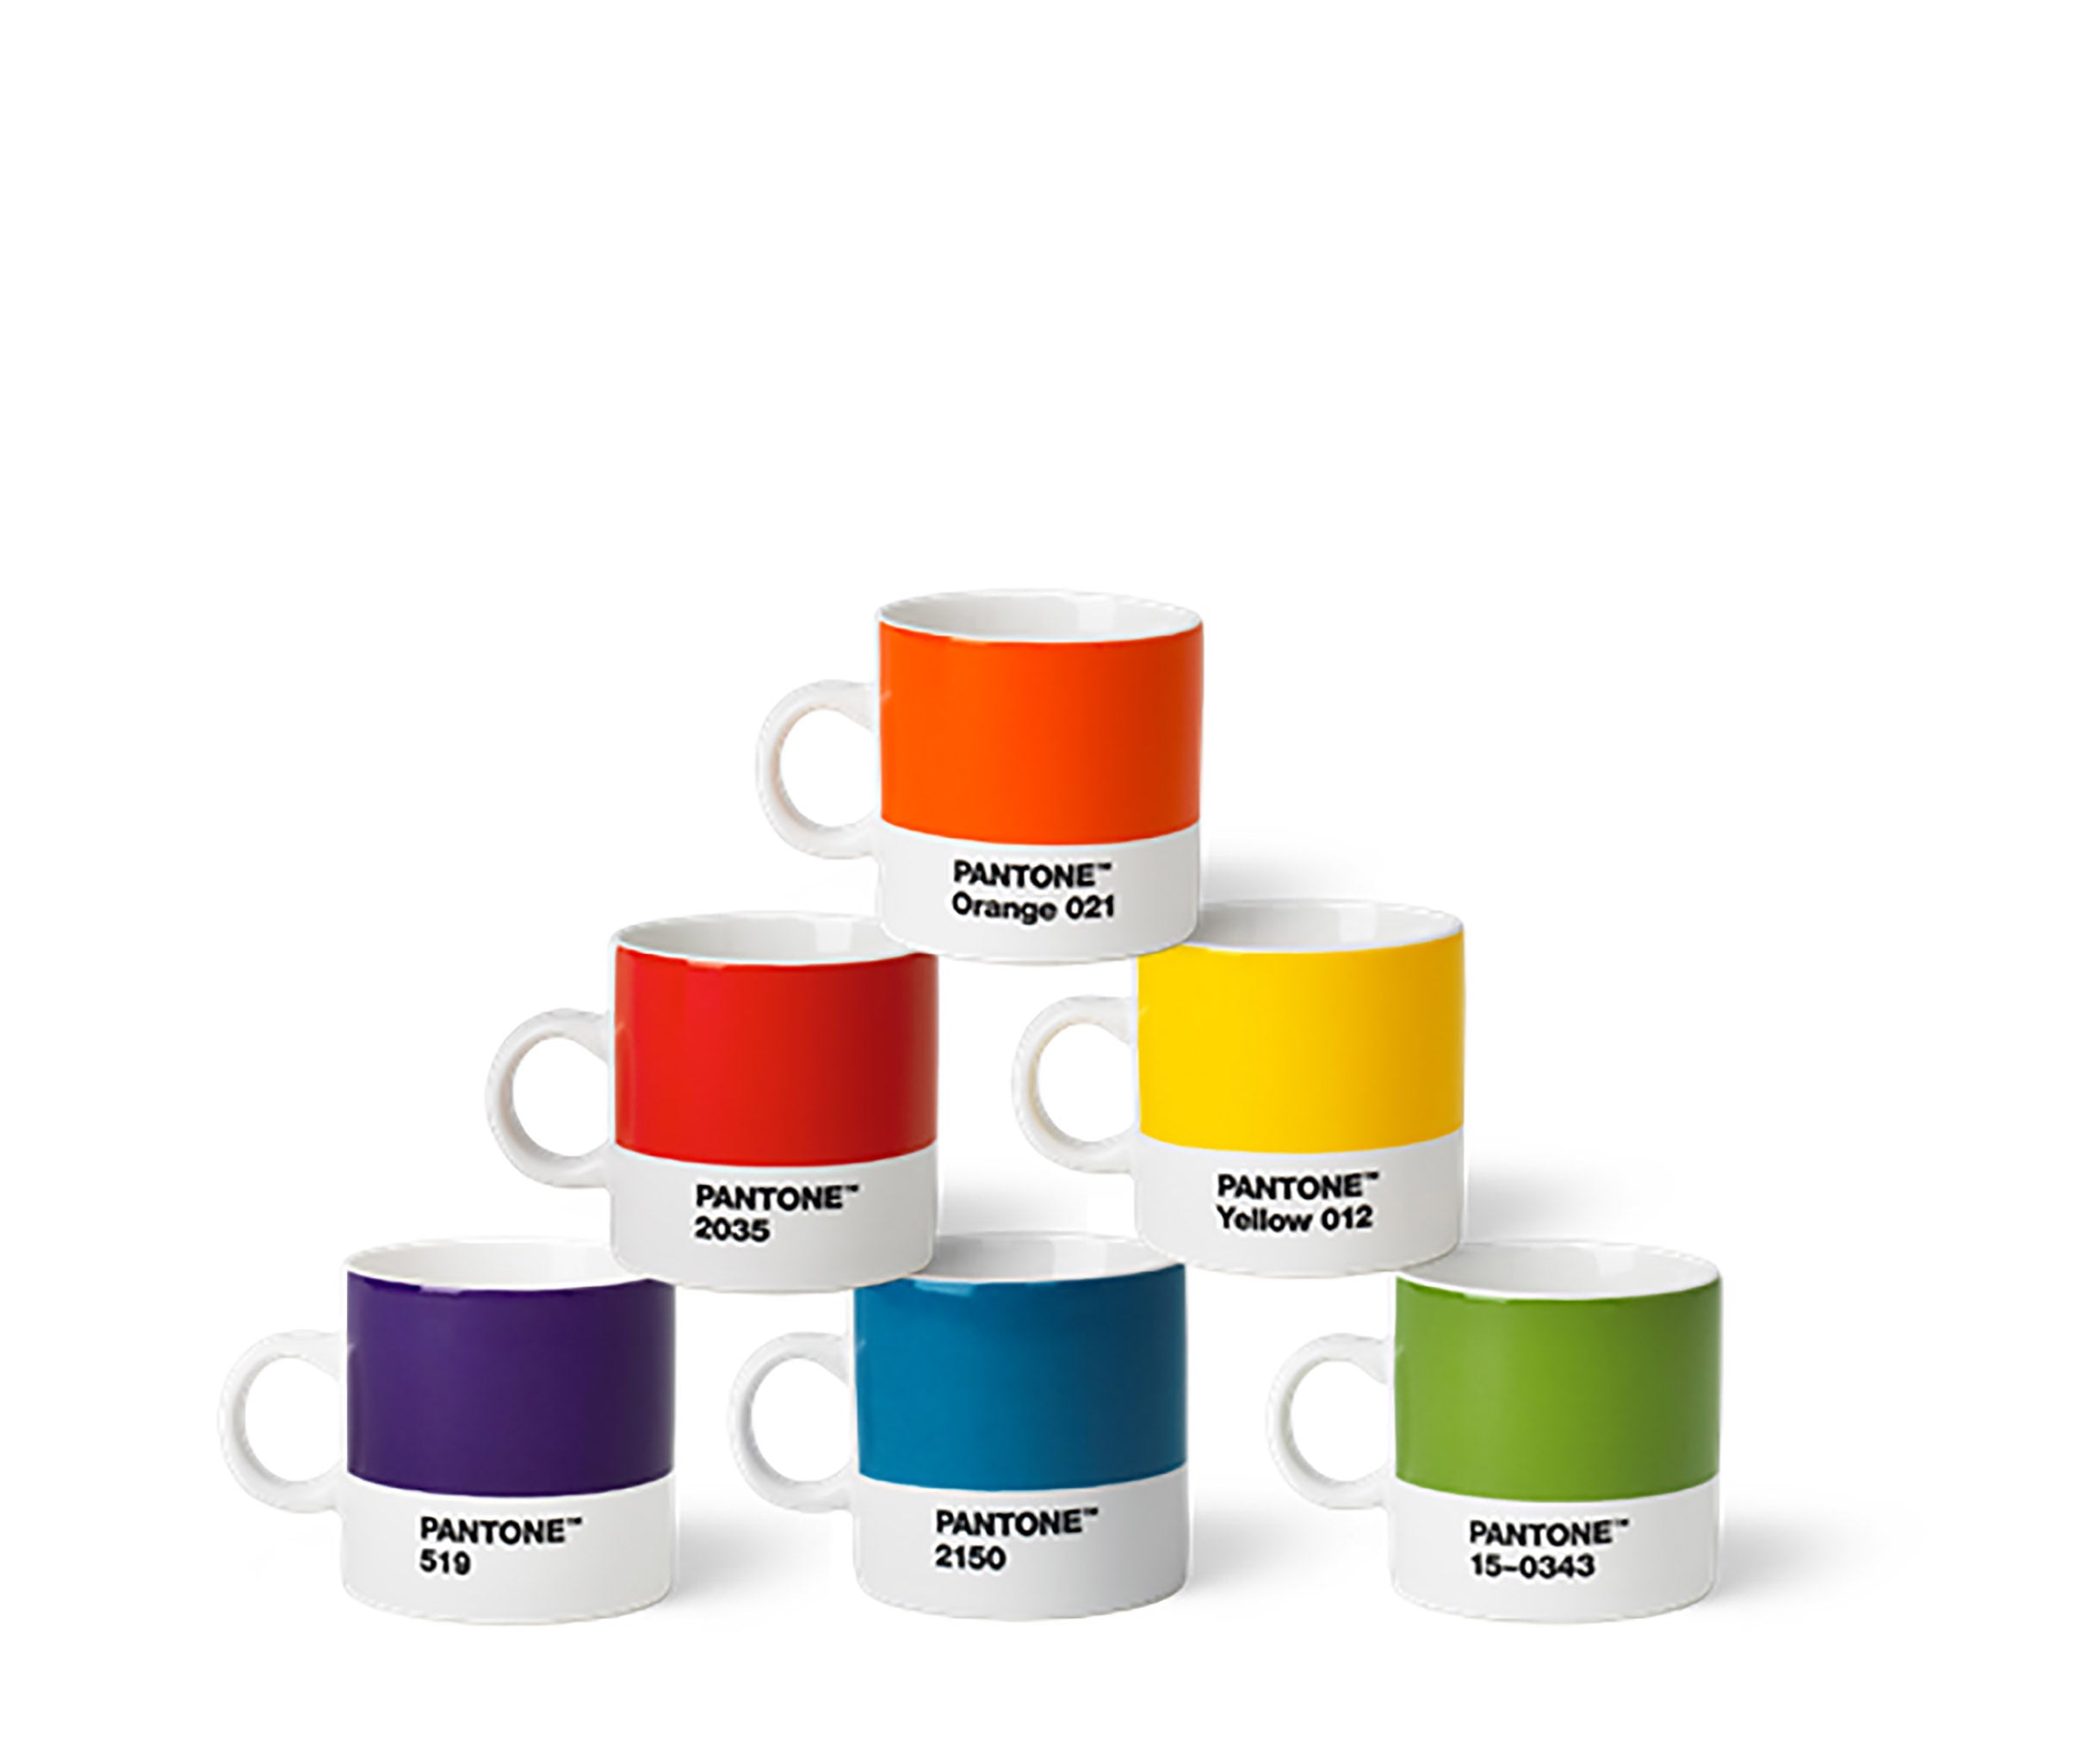 Espressotassen-Set 1 von Pantone in Orange, Rot, Gelb, Violett, Blau und Grün